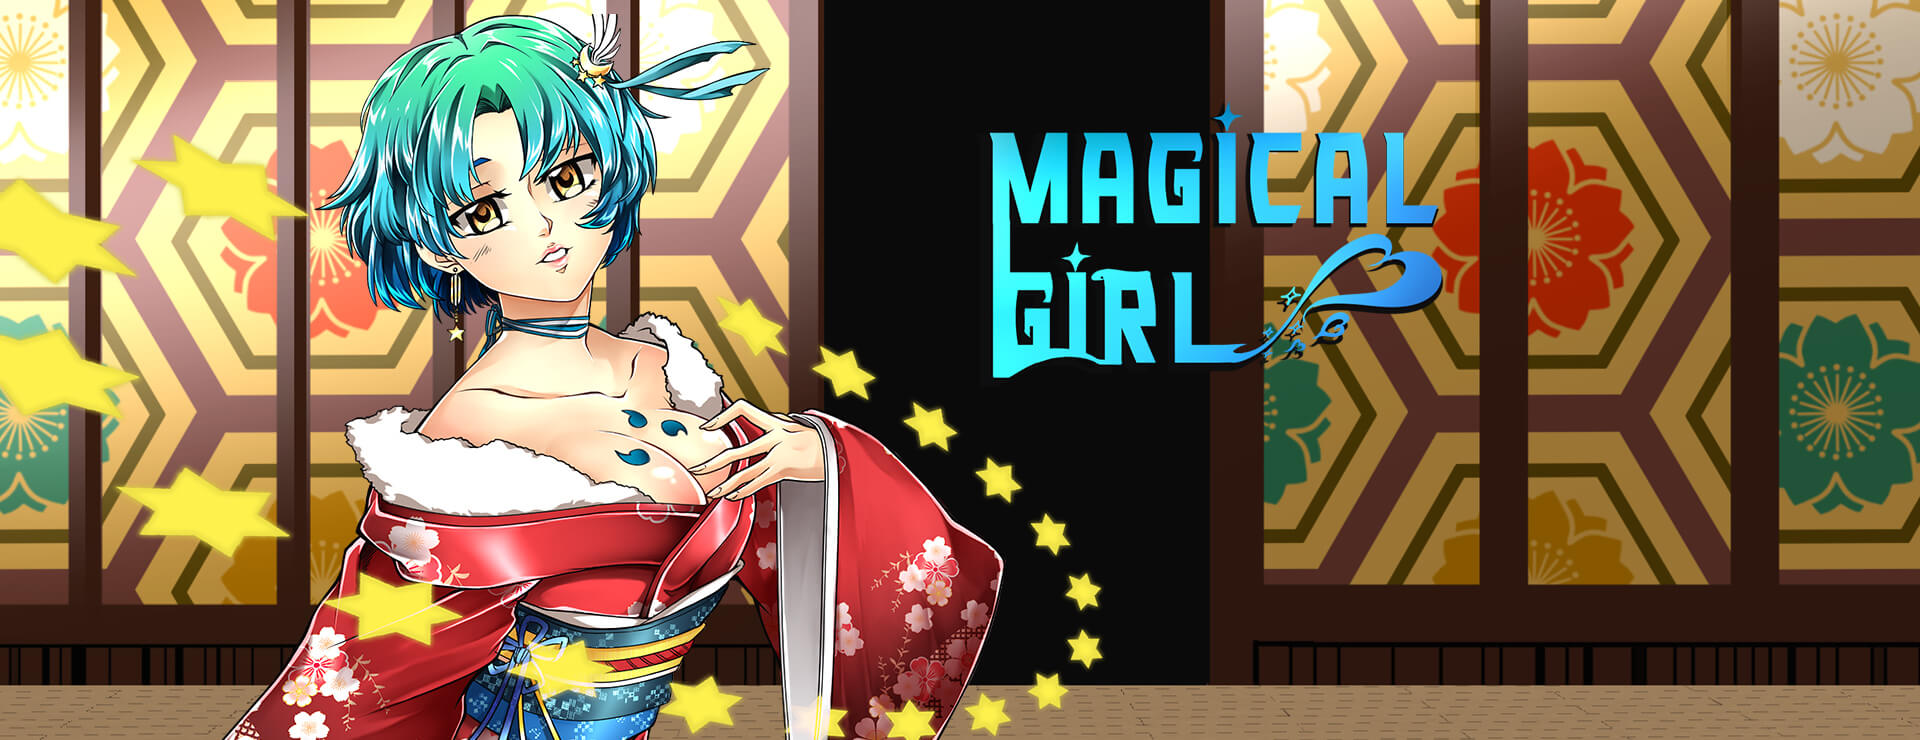 Magical Girl - Zwanglos  Spiel